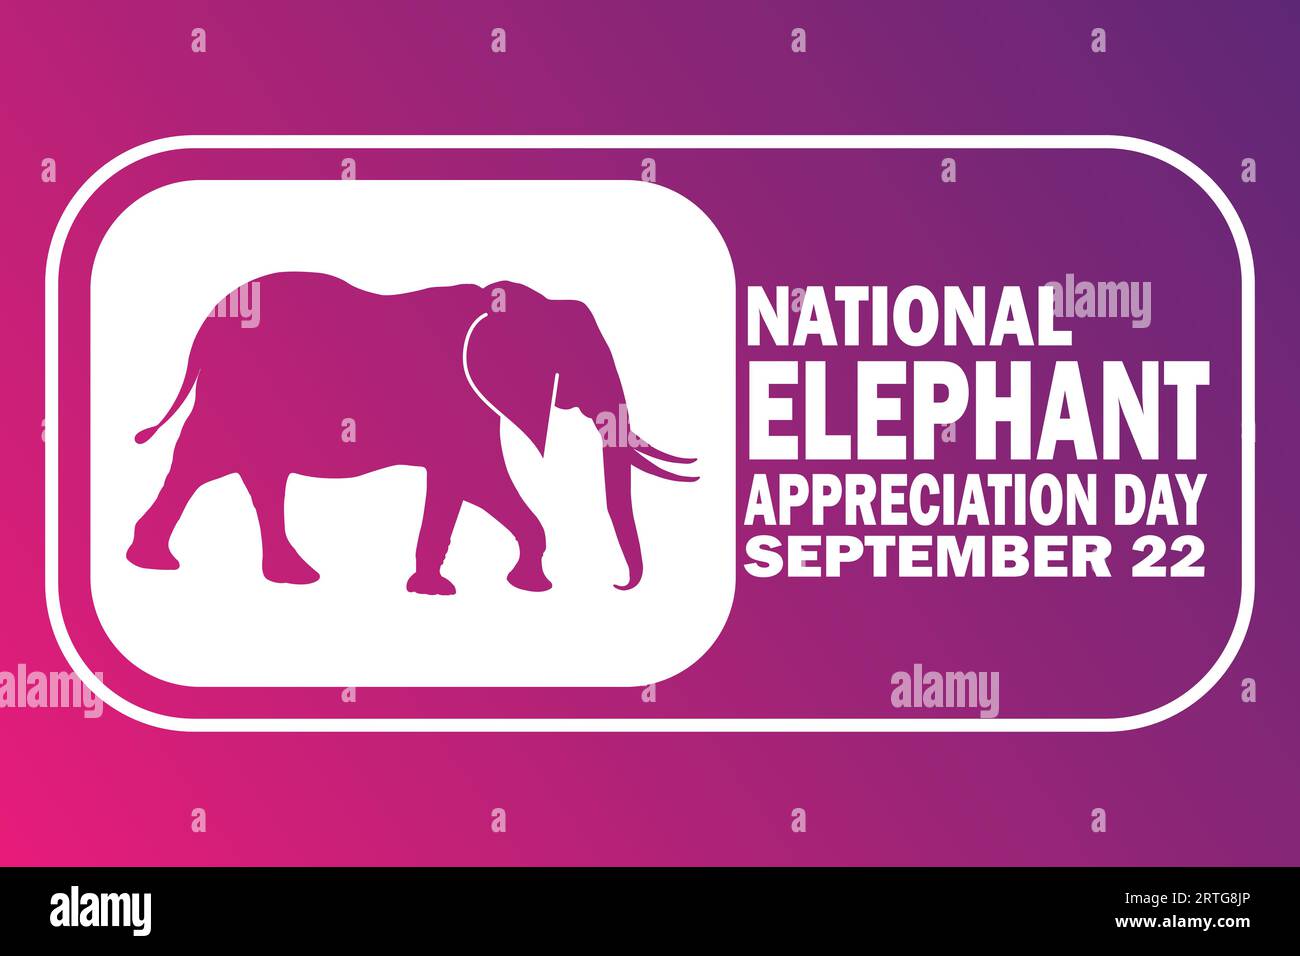 National Elephant Appreciation Day. September 22. Urlaubskonzept. Vorlage für Hintergrund, Banner, Karte, Poster mit Textbeschriftung. Vektor Stock Vektor